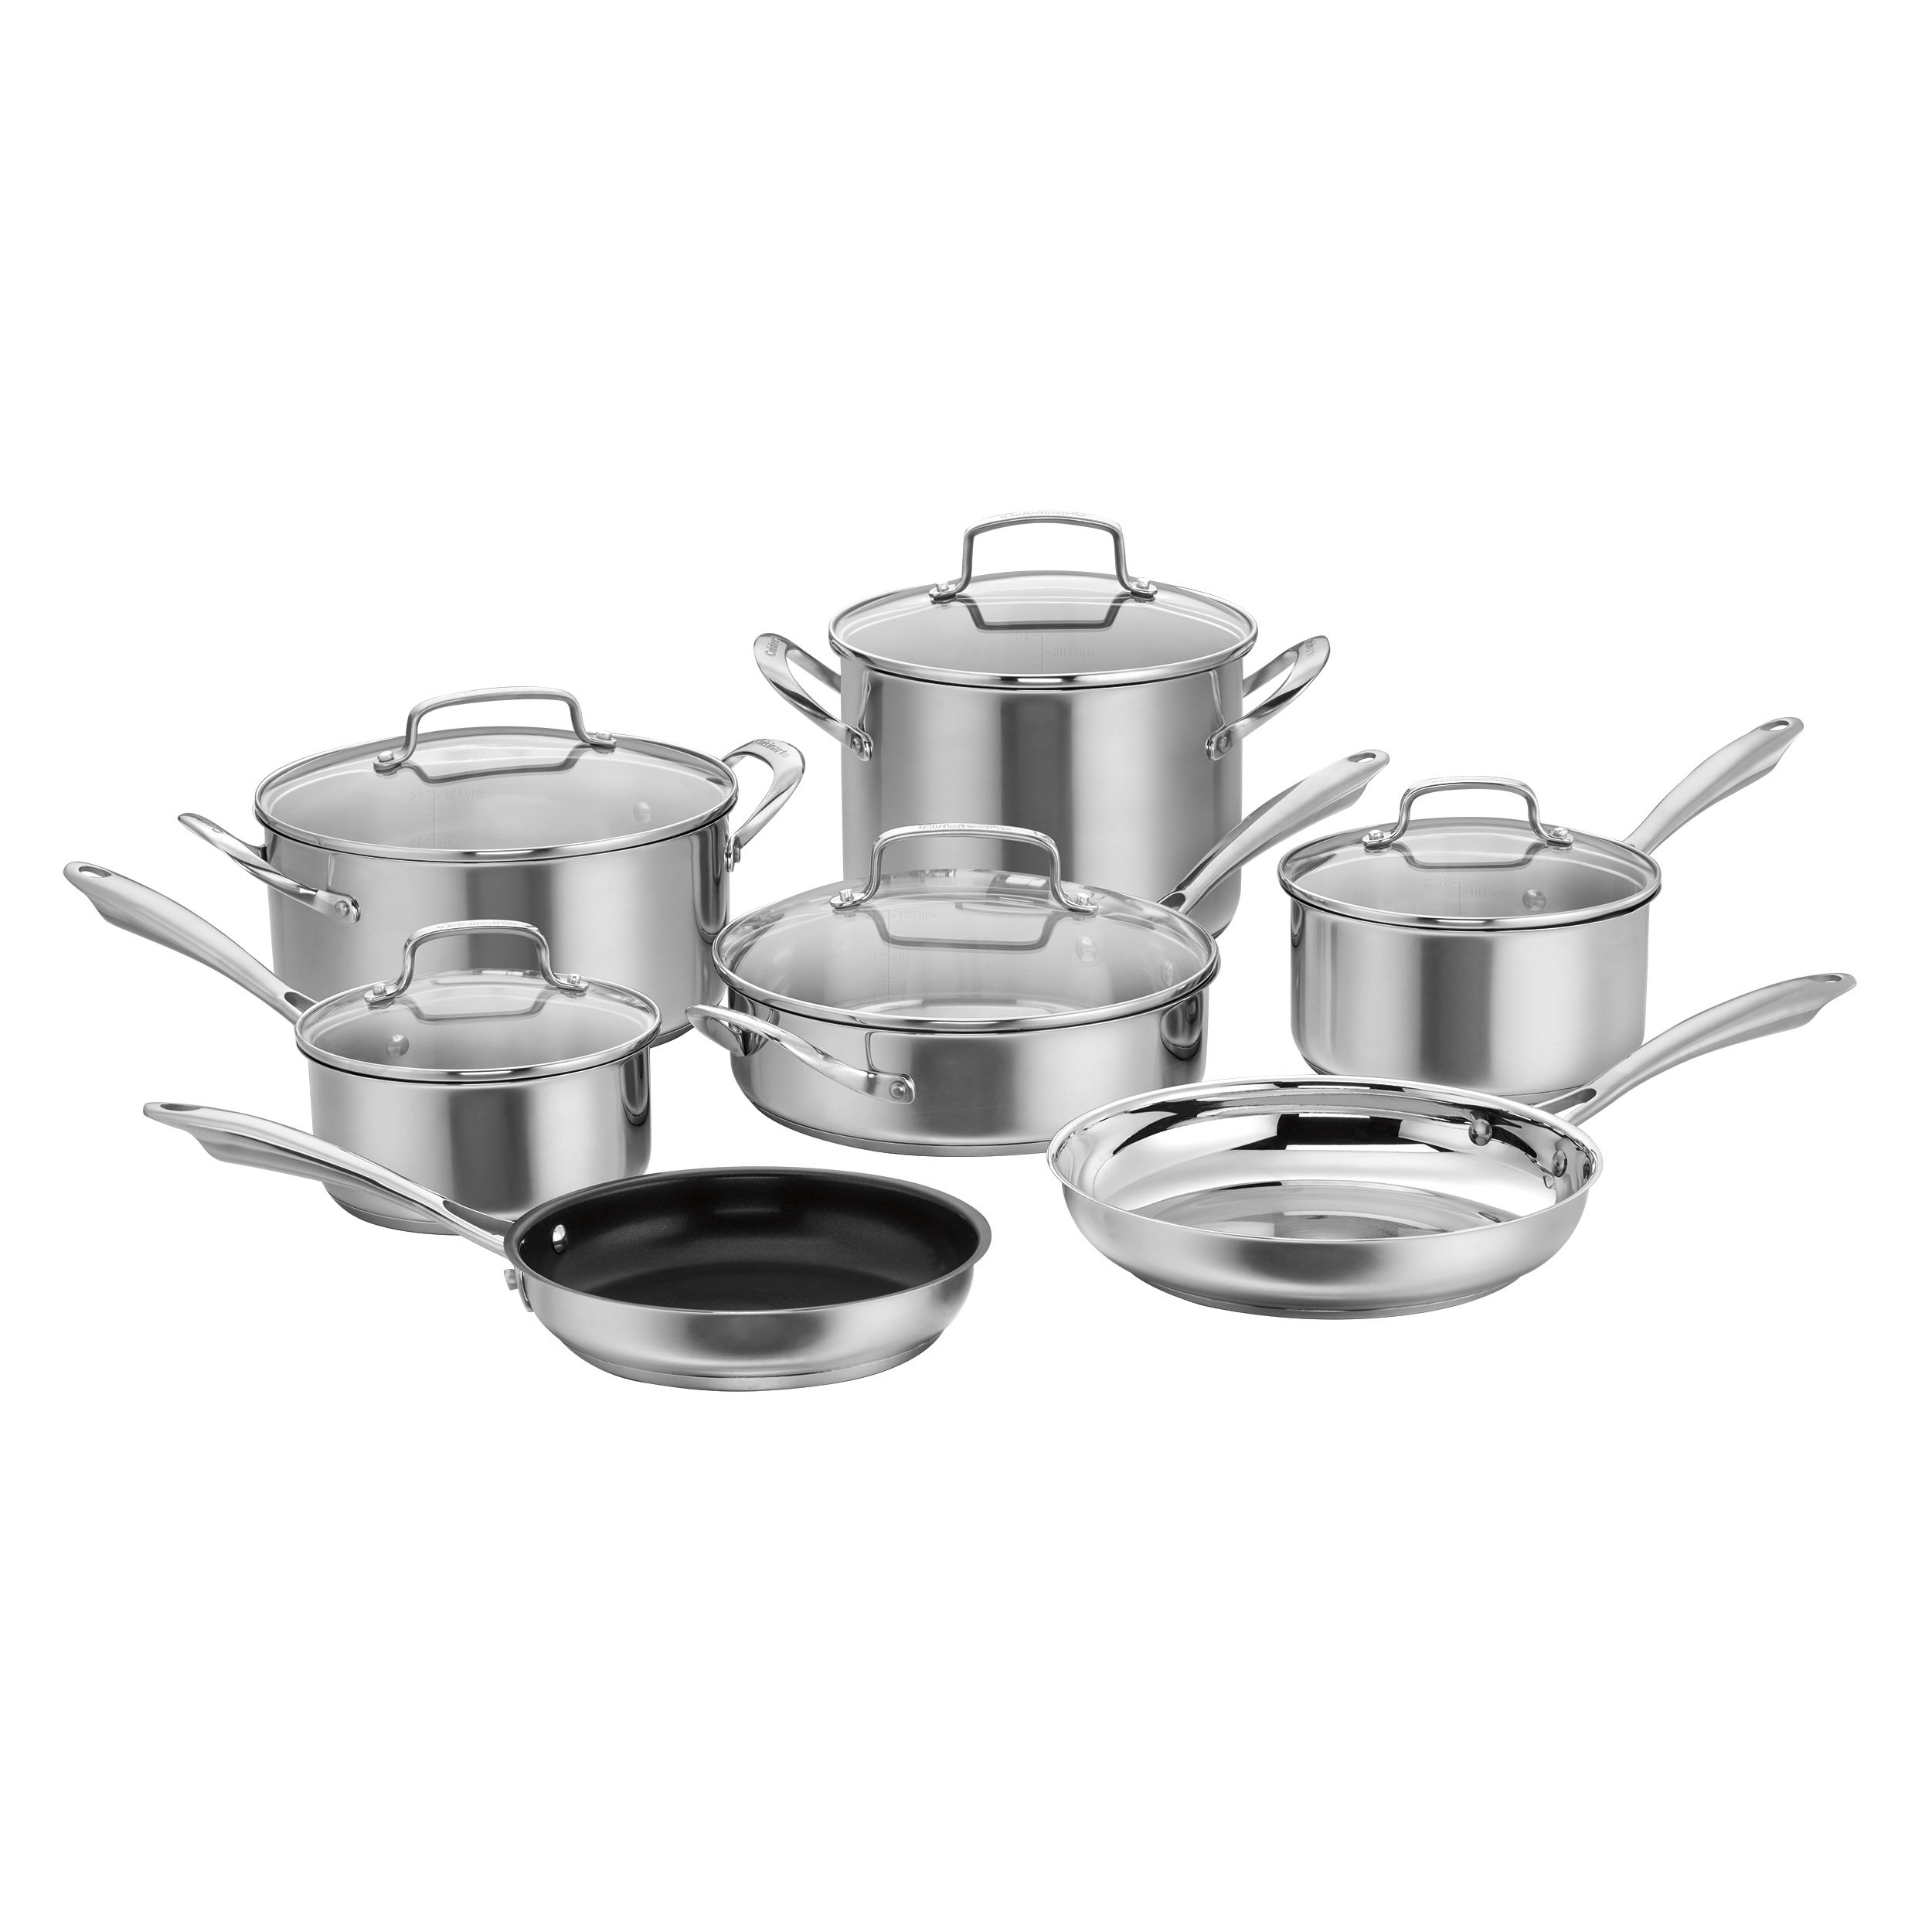 https://assets.wfcdn.com/im/75879897/compr-r85/2371/237162462/cuisinart-12-piece-stainless-steel-cookware-set.jpg